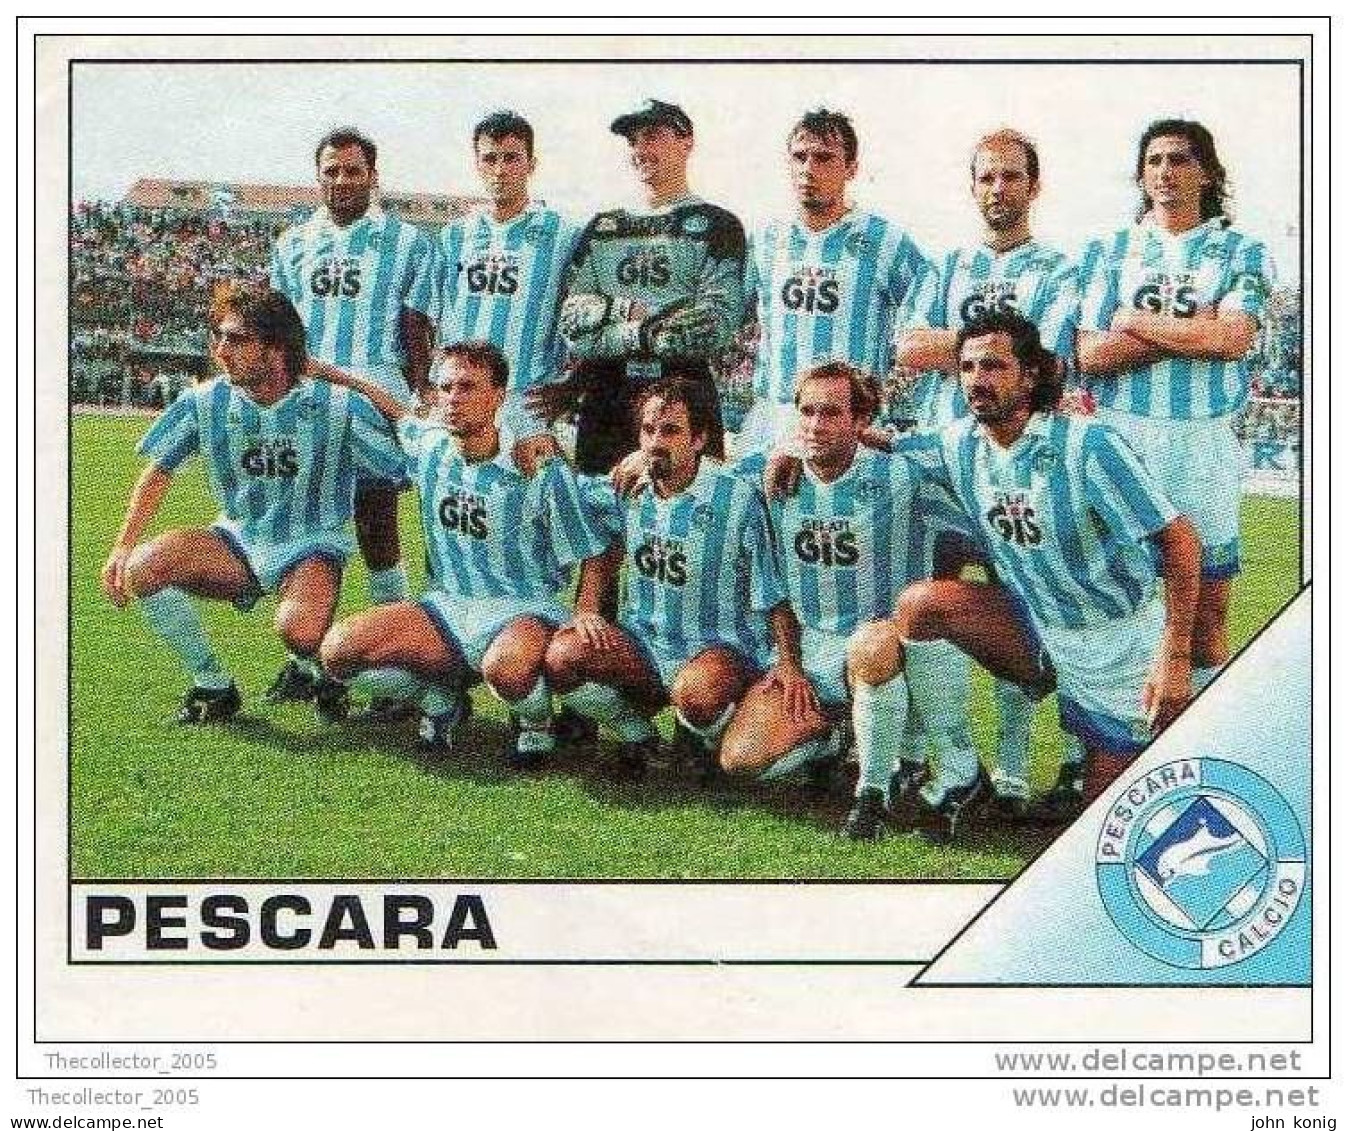 CALCIATORI - CALCIO Figurine Panini-calciatori 1995-96-n.460 (Pescara) - NUOVA-MAI INCOLLATA - Edition Italienne